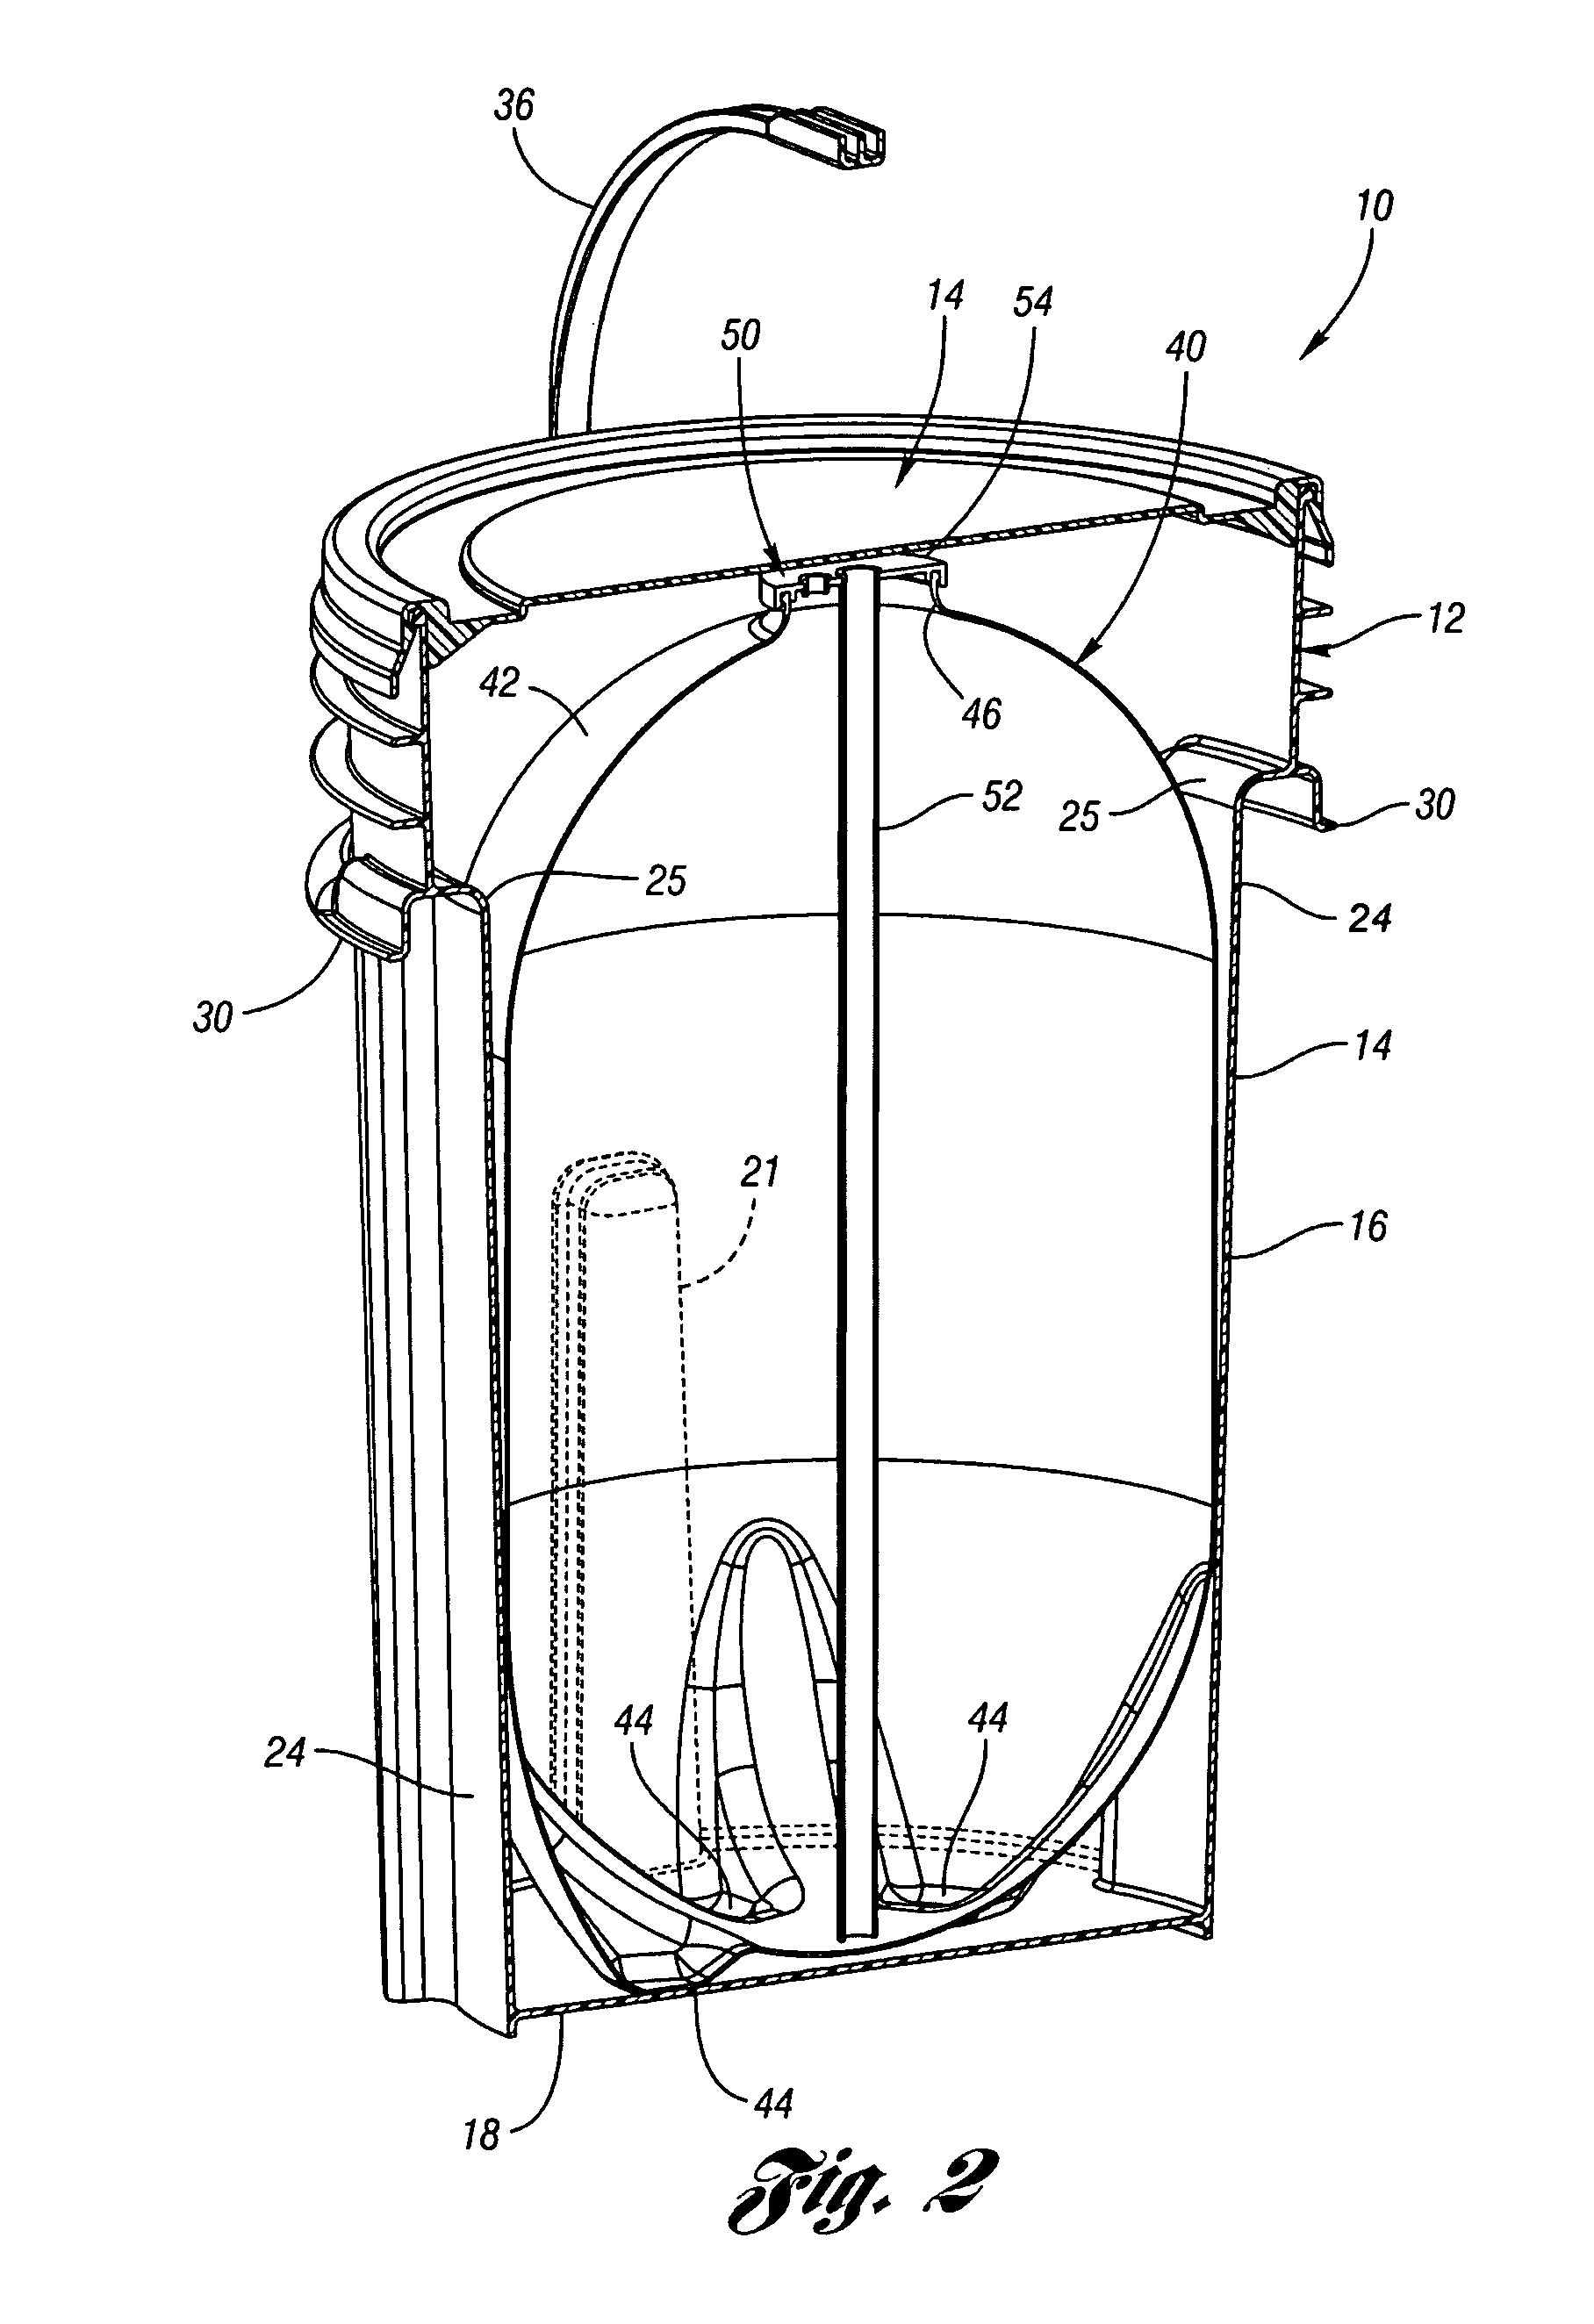 Plastic beer keg